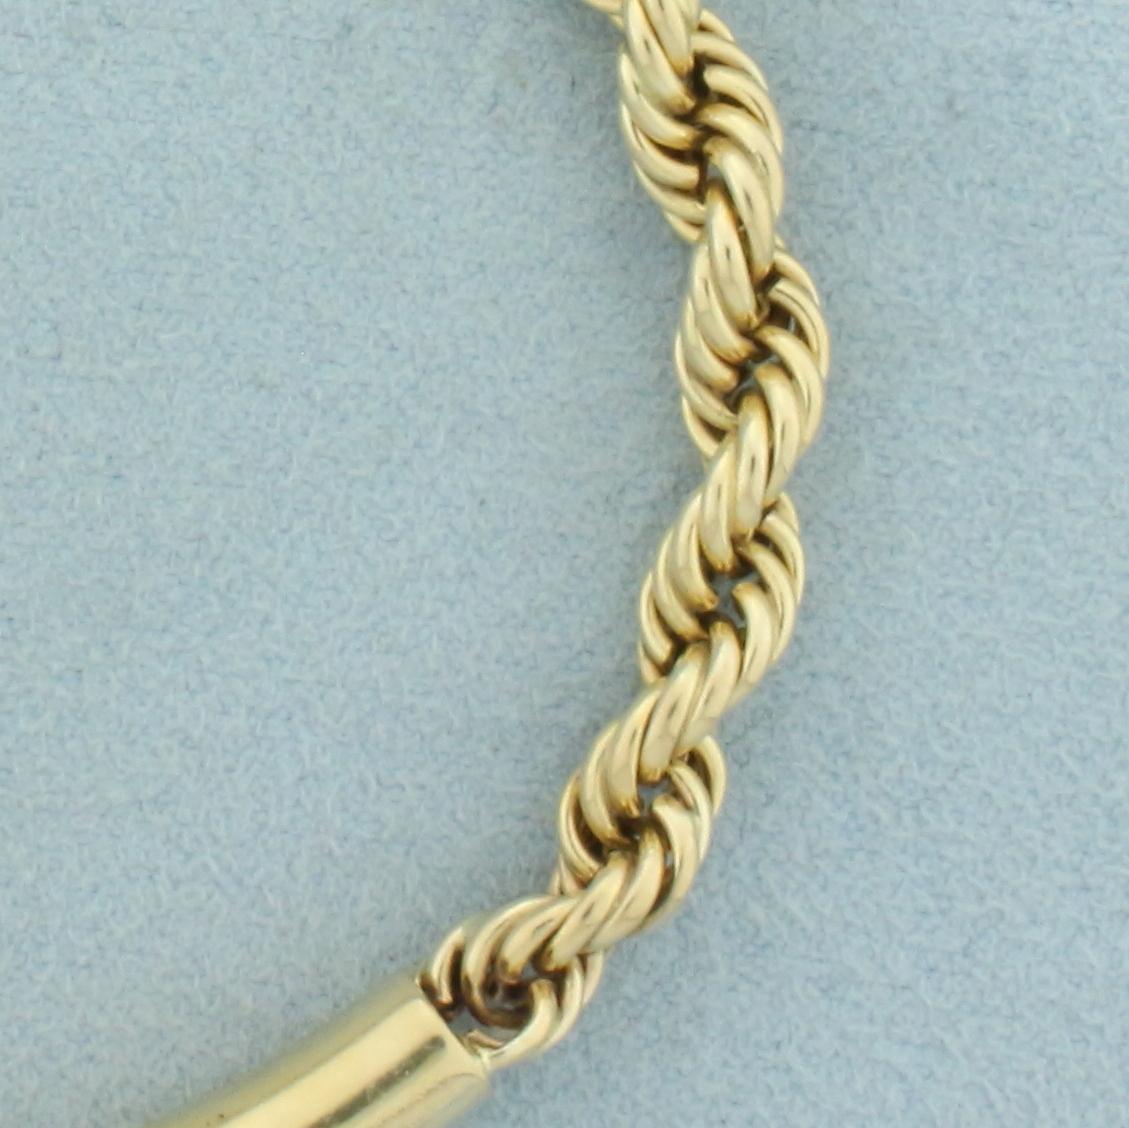 Tube Center Rope Bracelet In 14k Yellow Gold